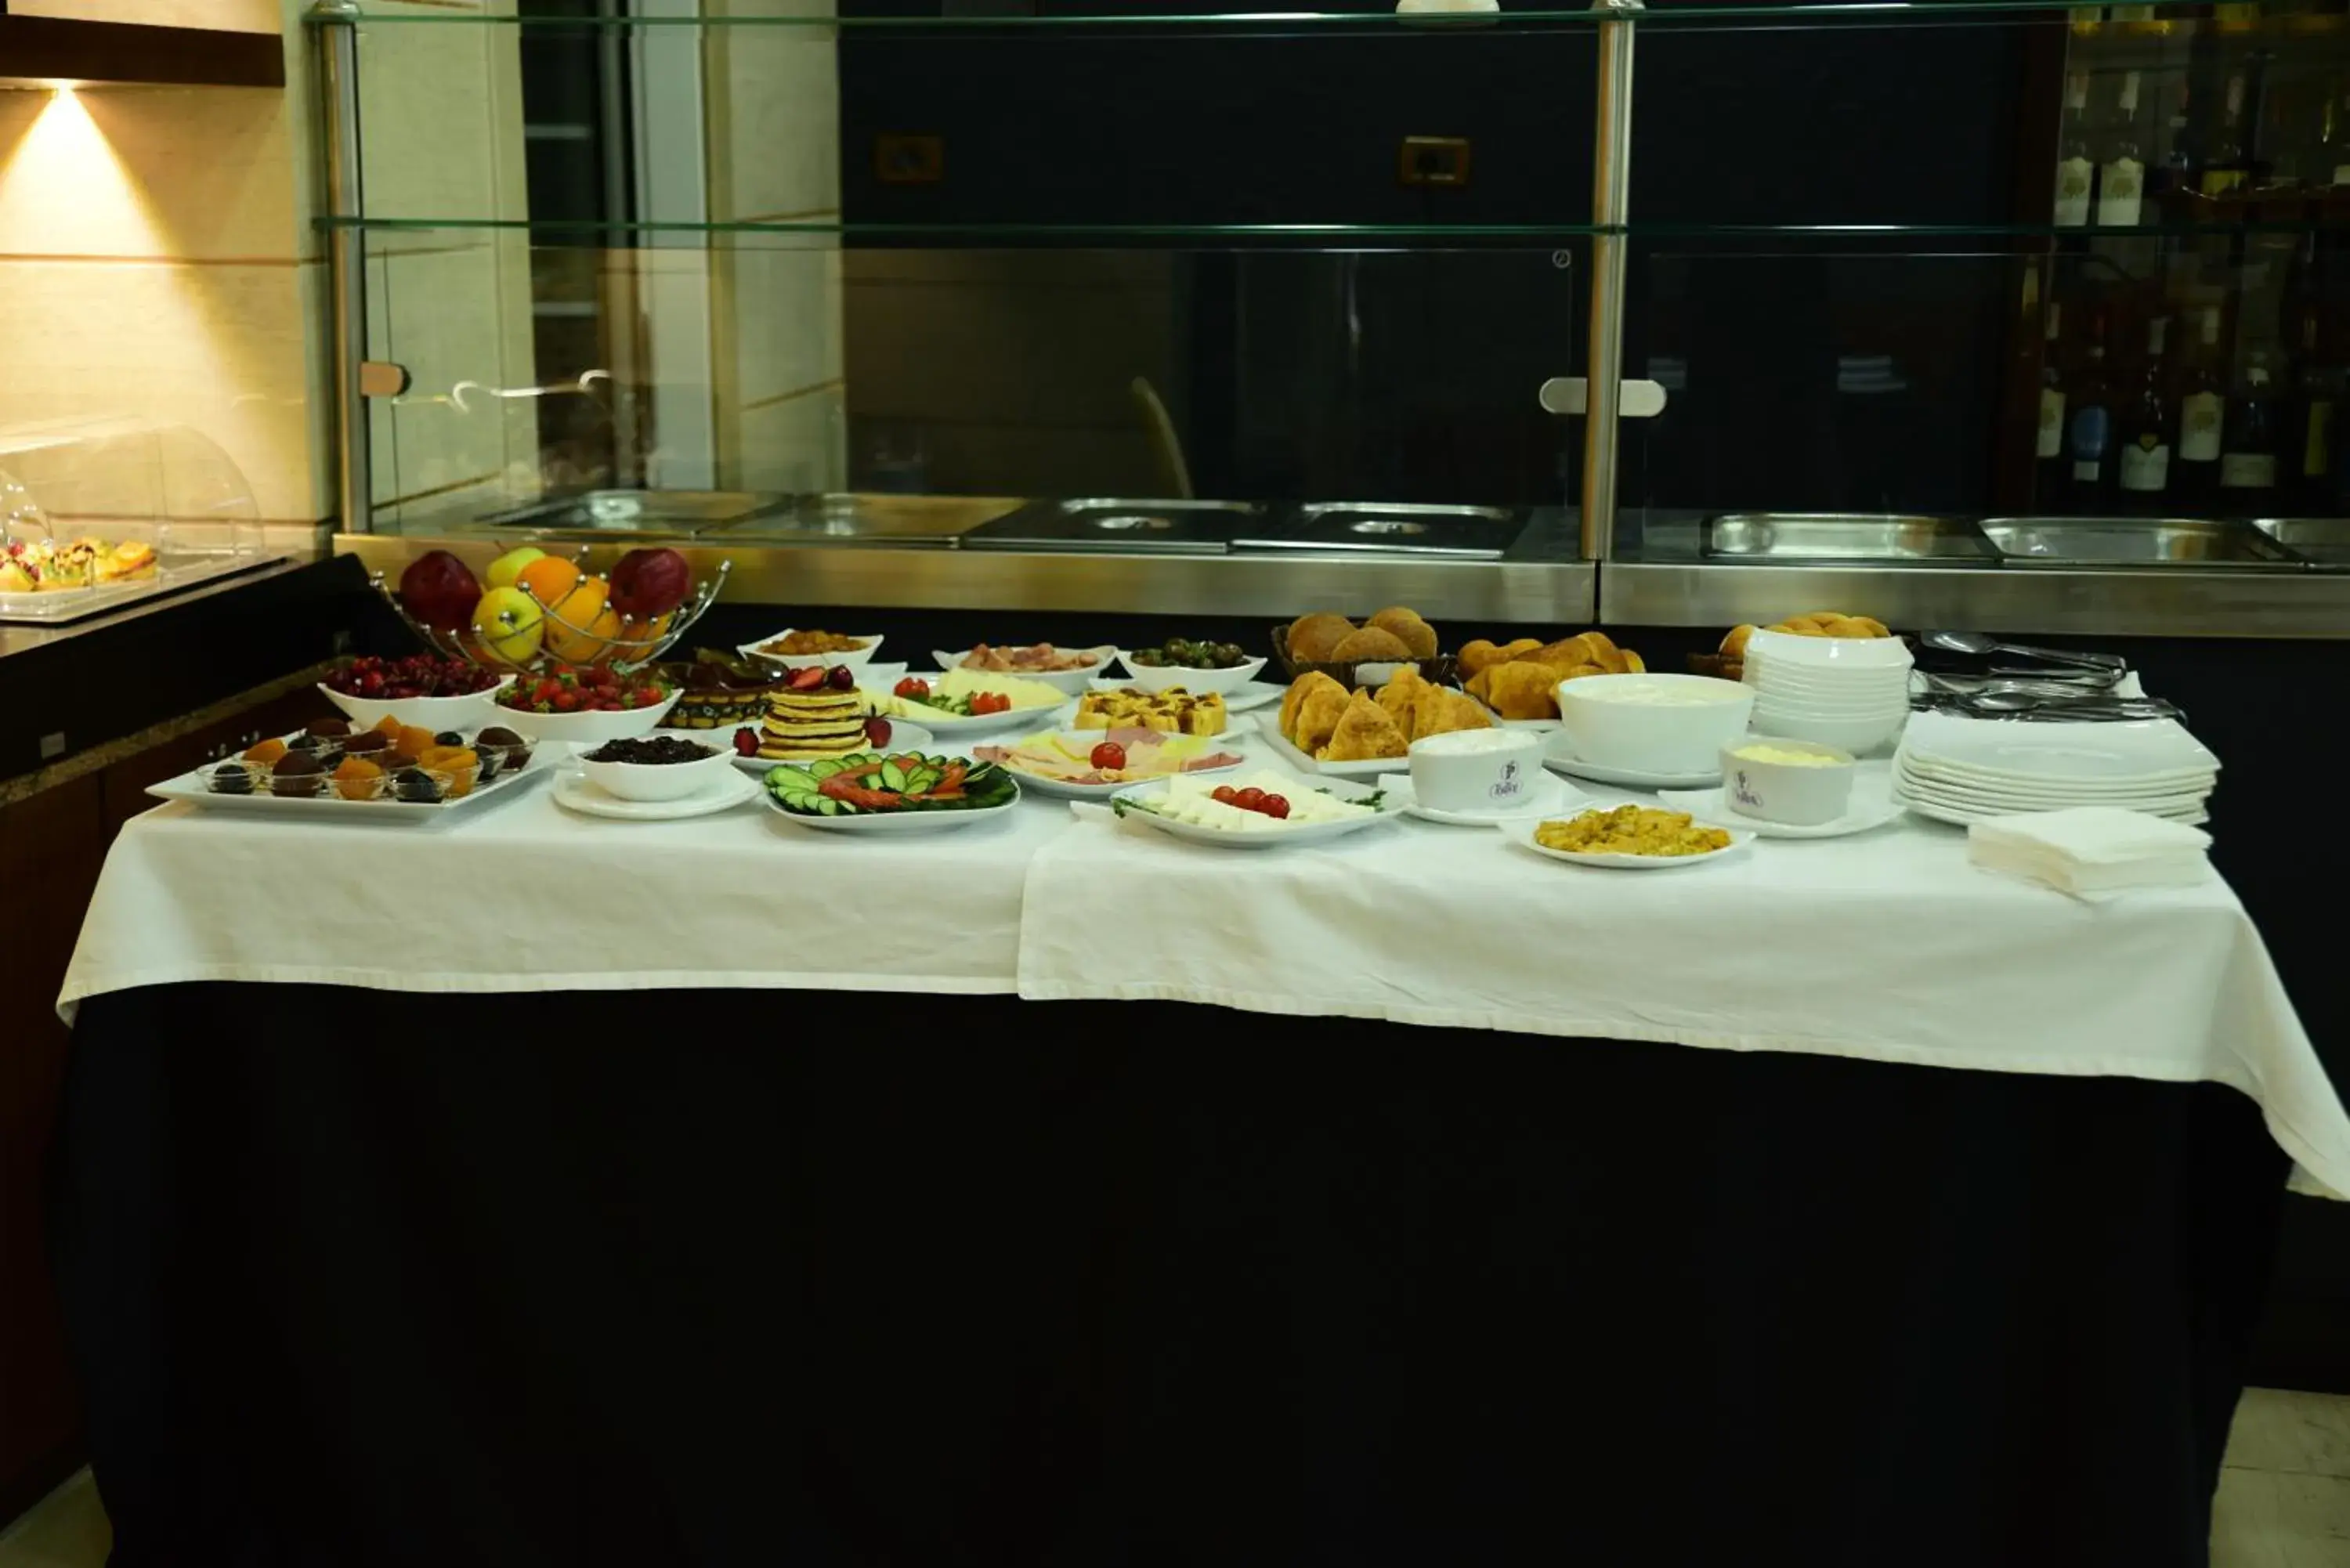 Buffet breakfast in Hotel Comfort